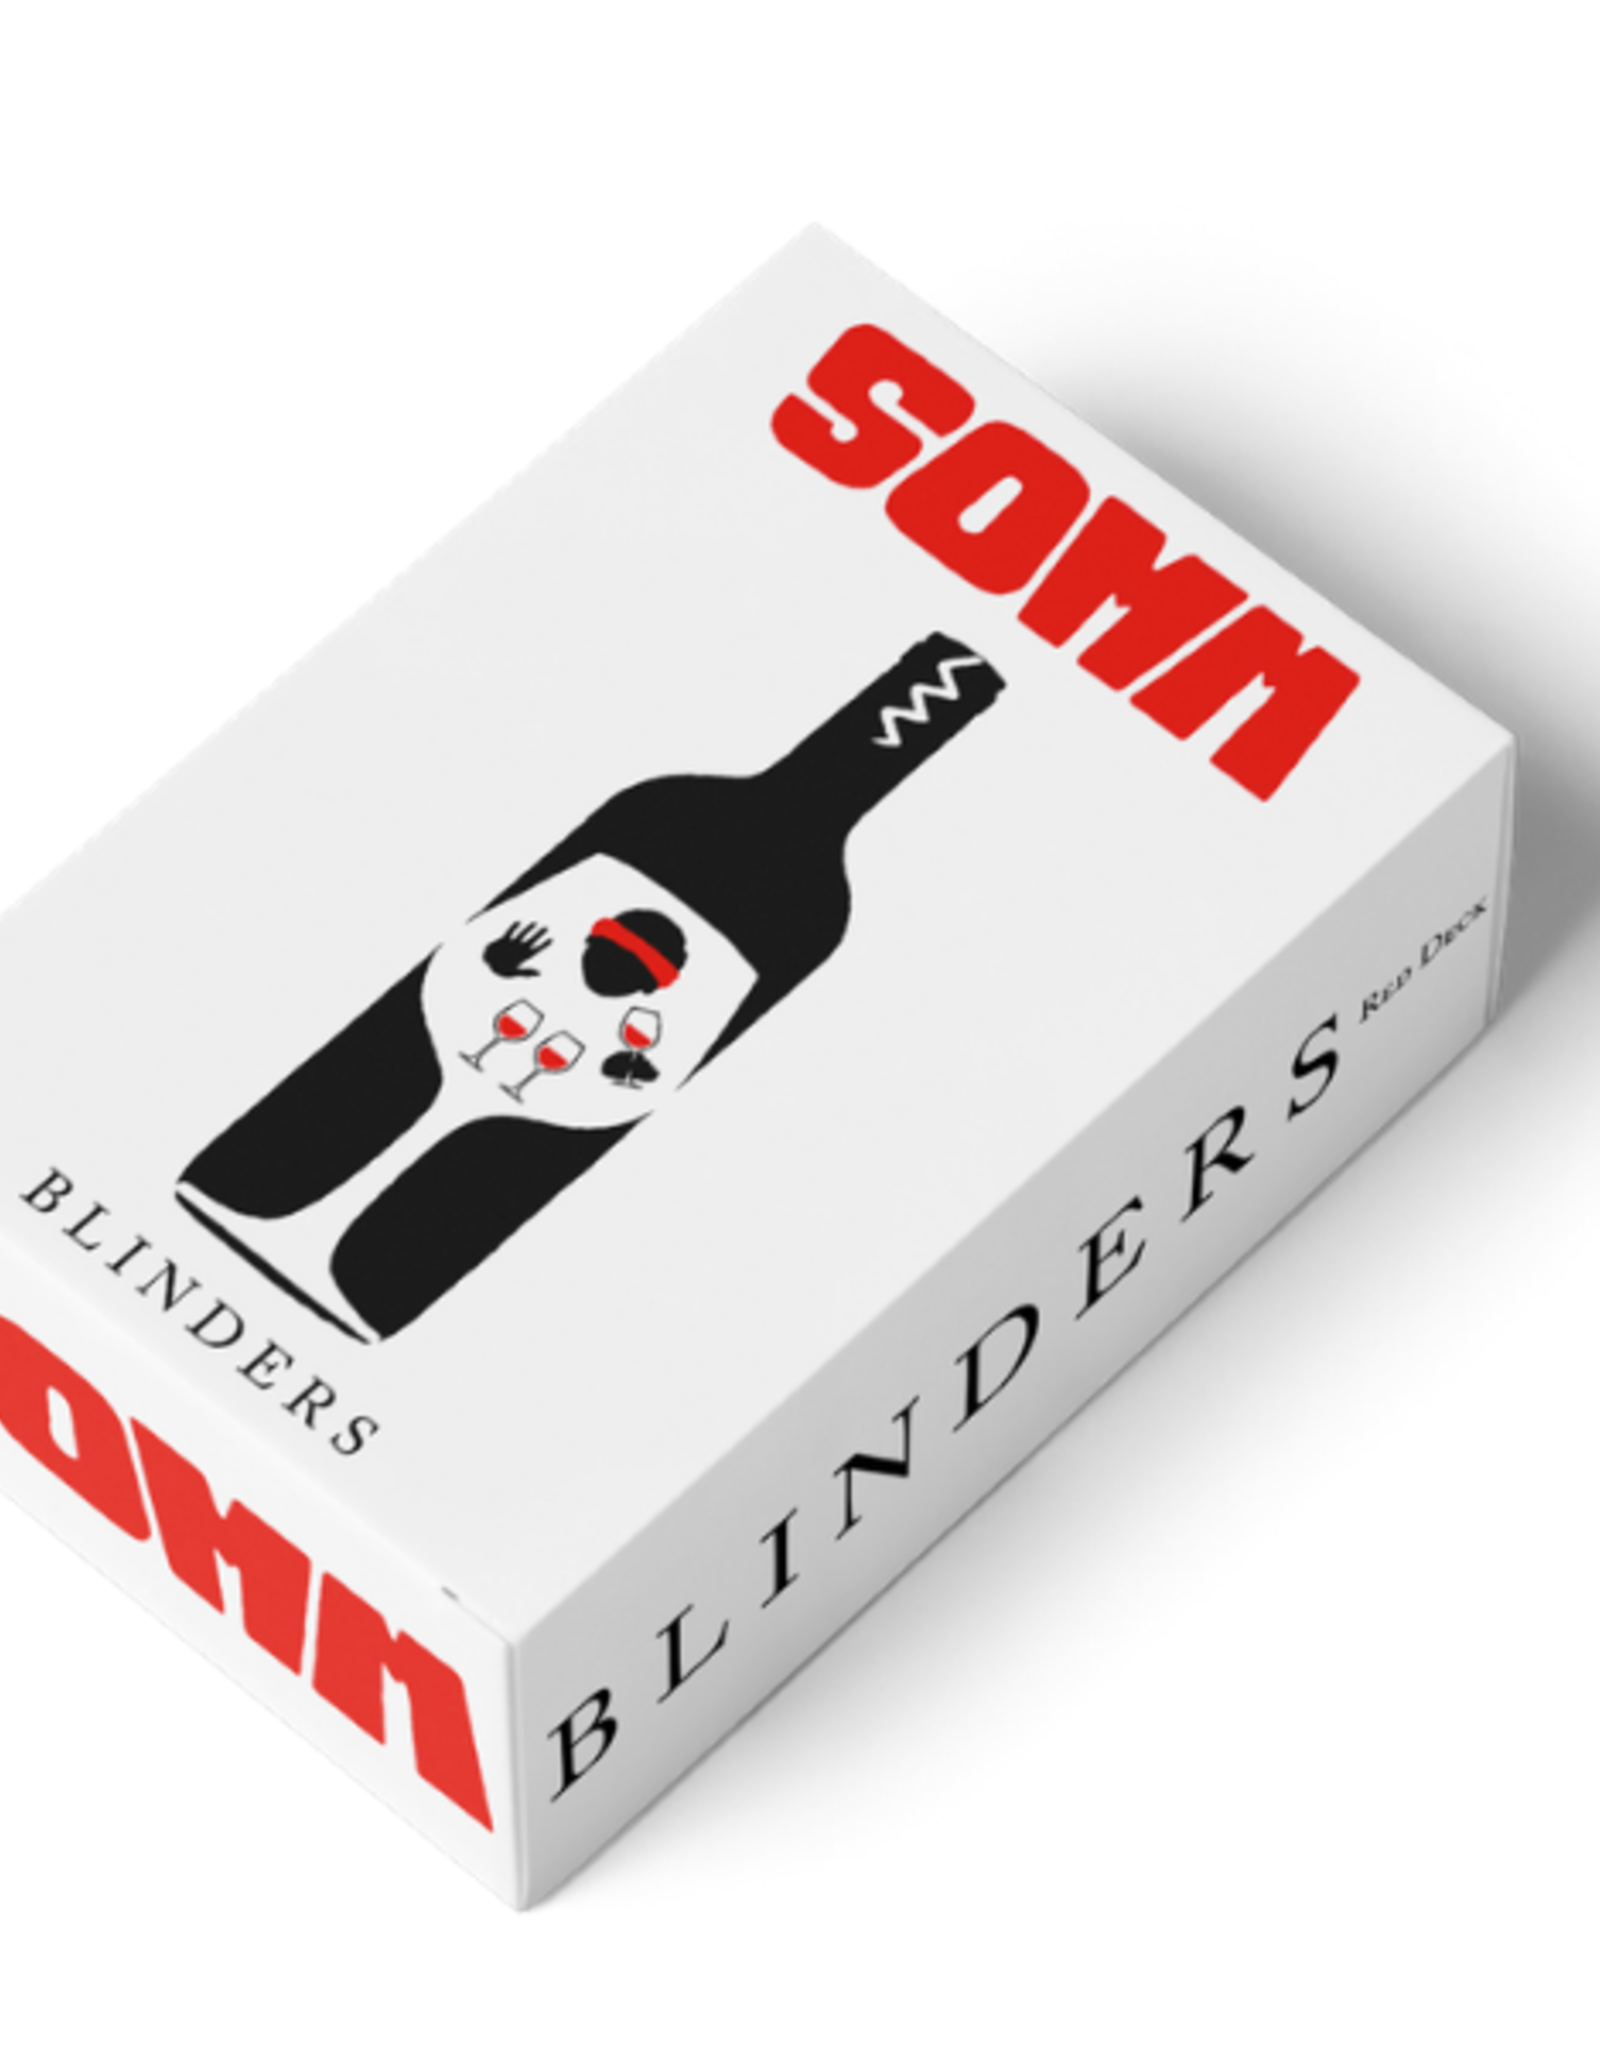 SOMM SOMM "Blinders" Red Deck